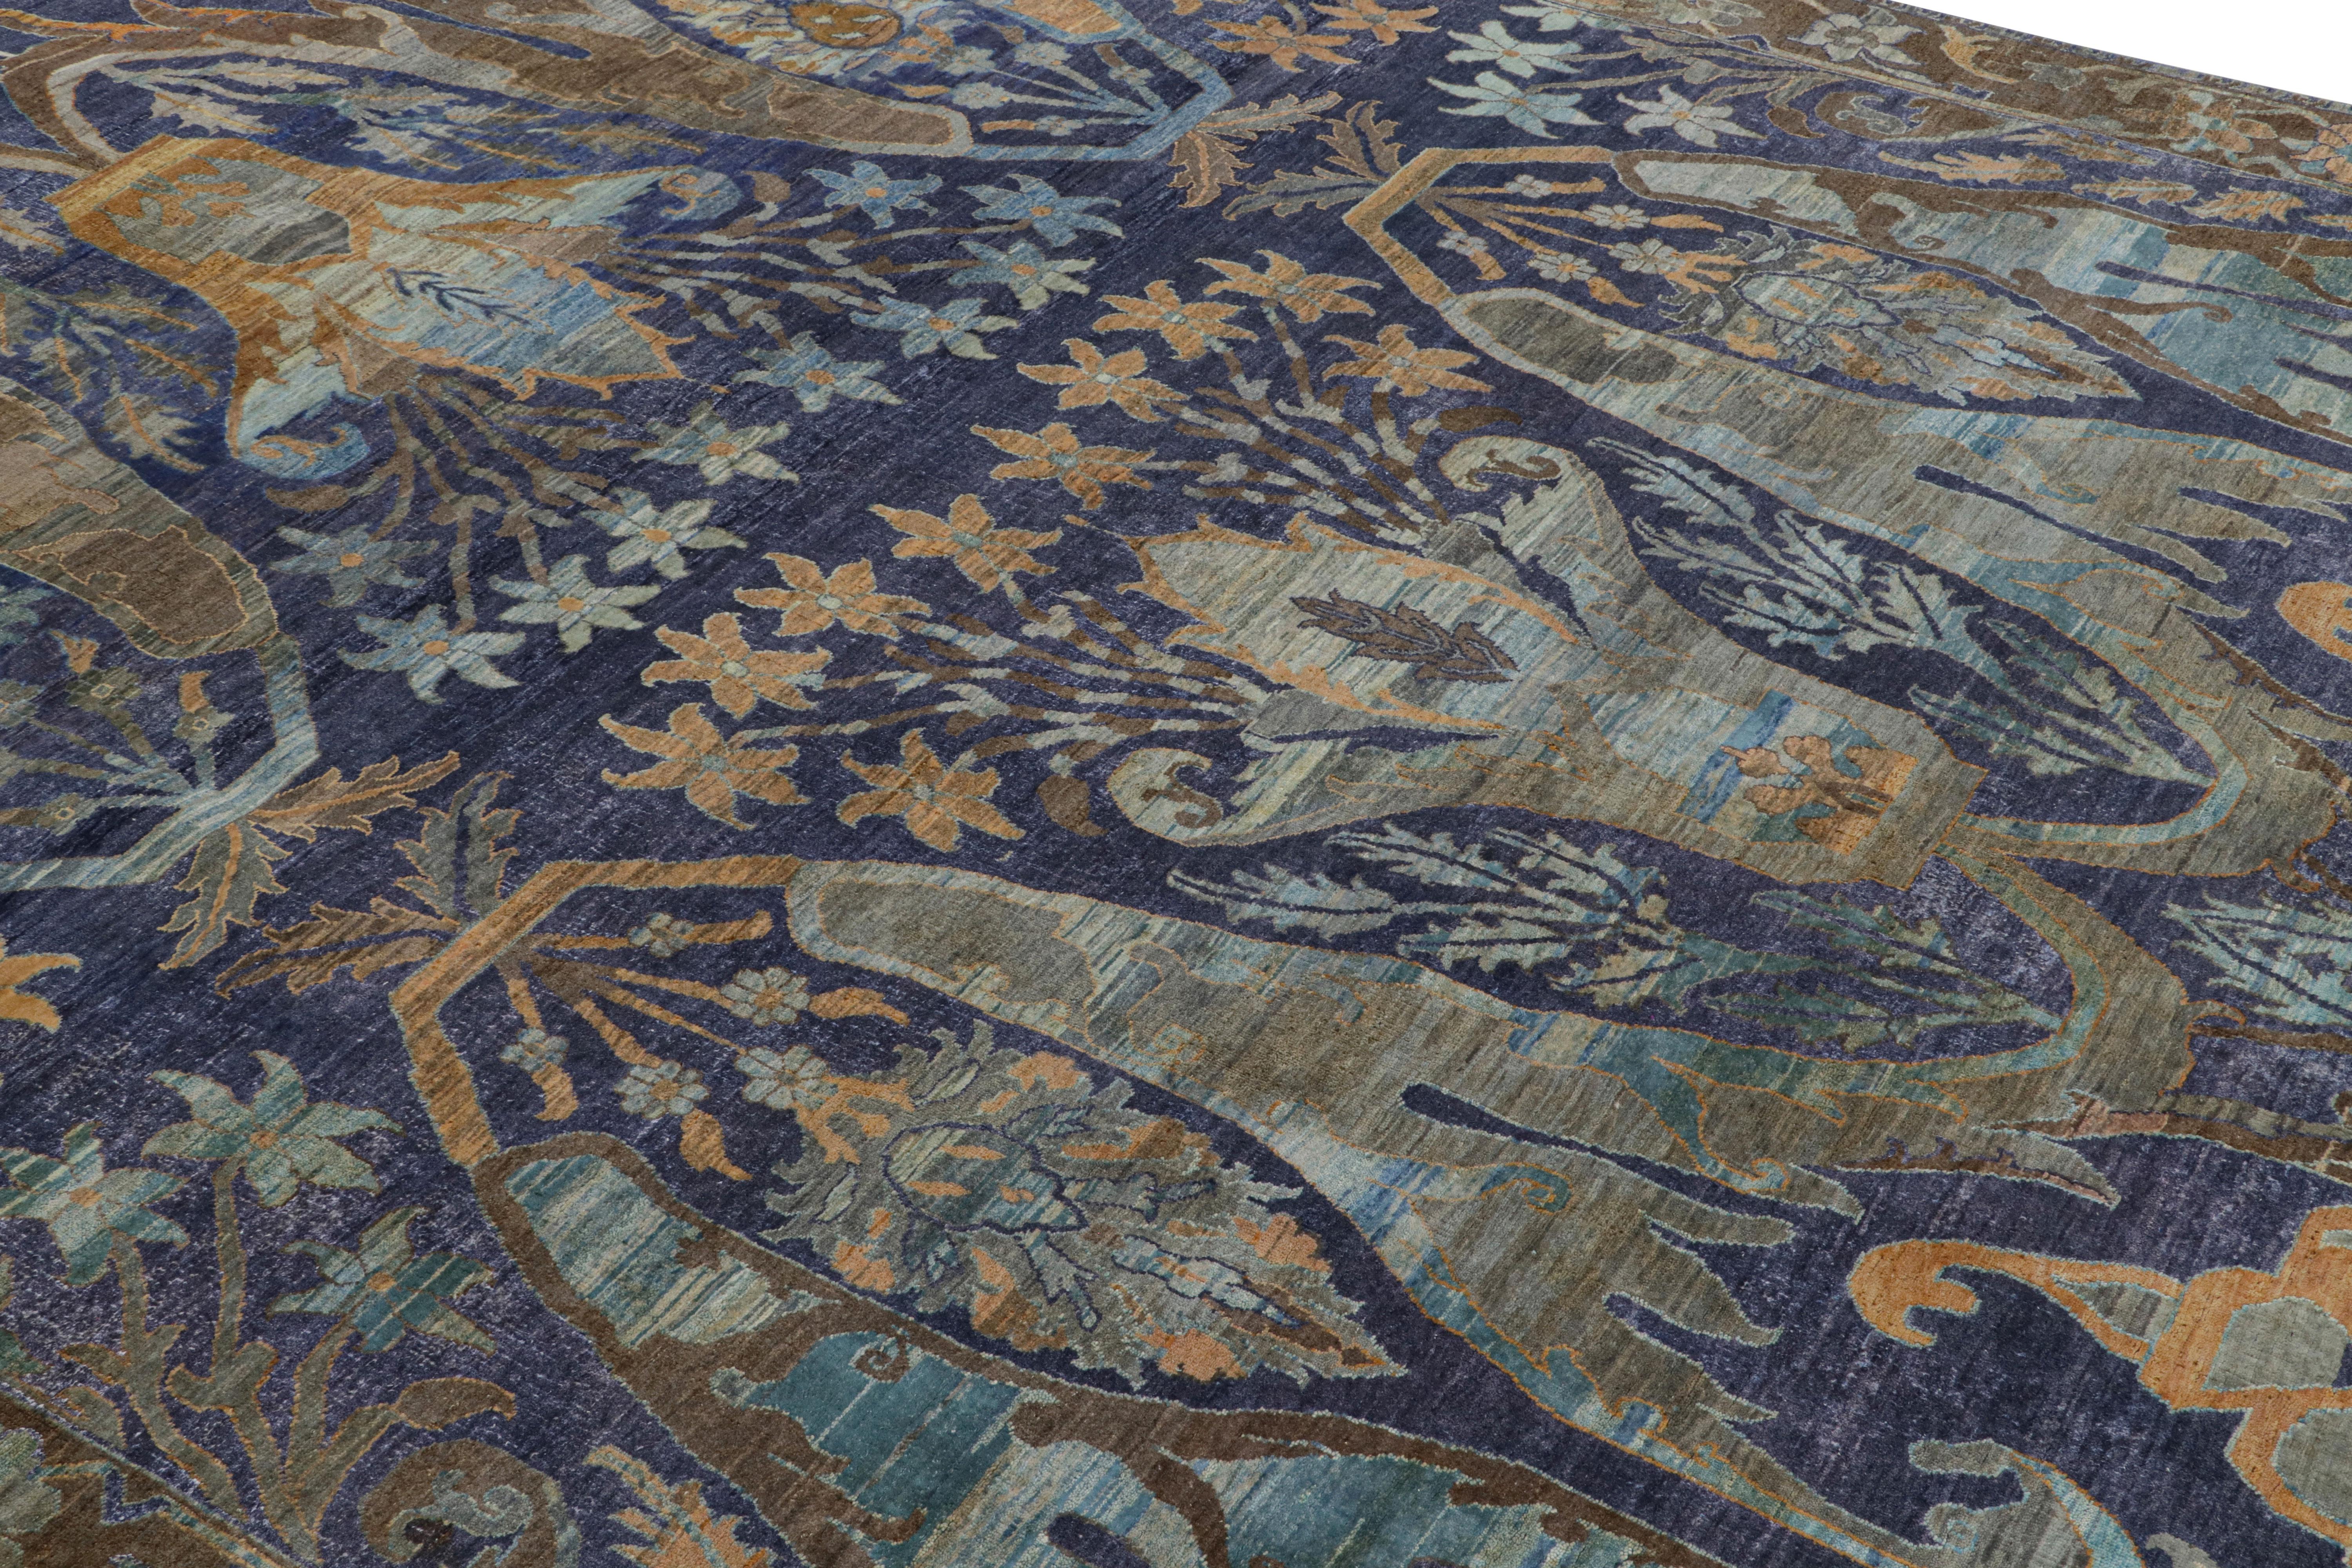 Dieser 9x13 große Teppich aus handgeknüpfter Wolle stammt aus der Modern Classics Collection'S von Rug & Kilim. 

Über das Design:

Der Teppich spiegelt eine kühne neue Sichtweise auf ein seltenes klassisches Design wider - insbesondere auf antike